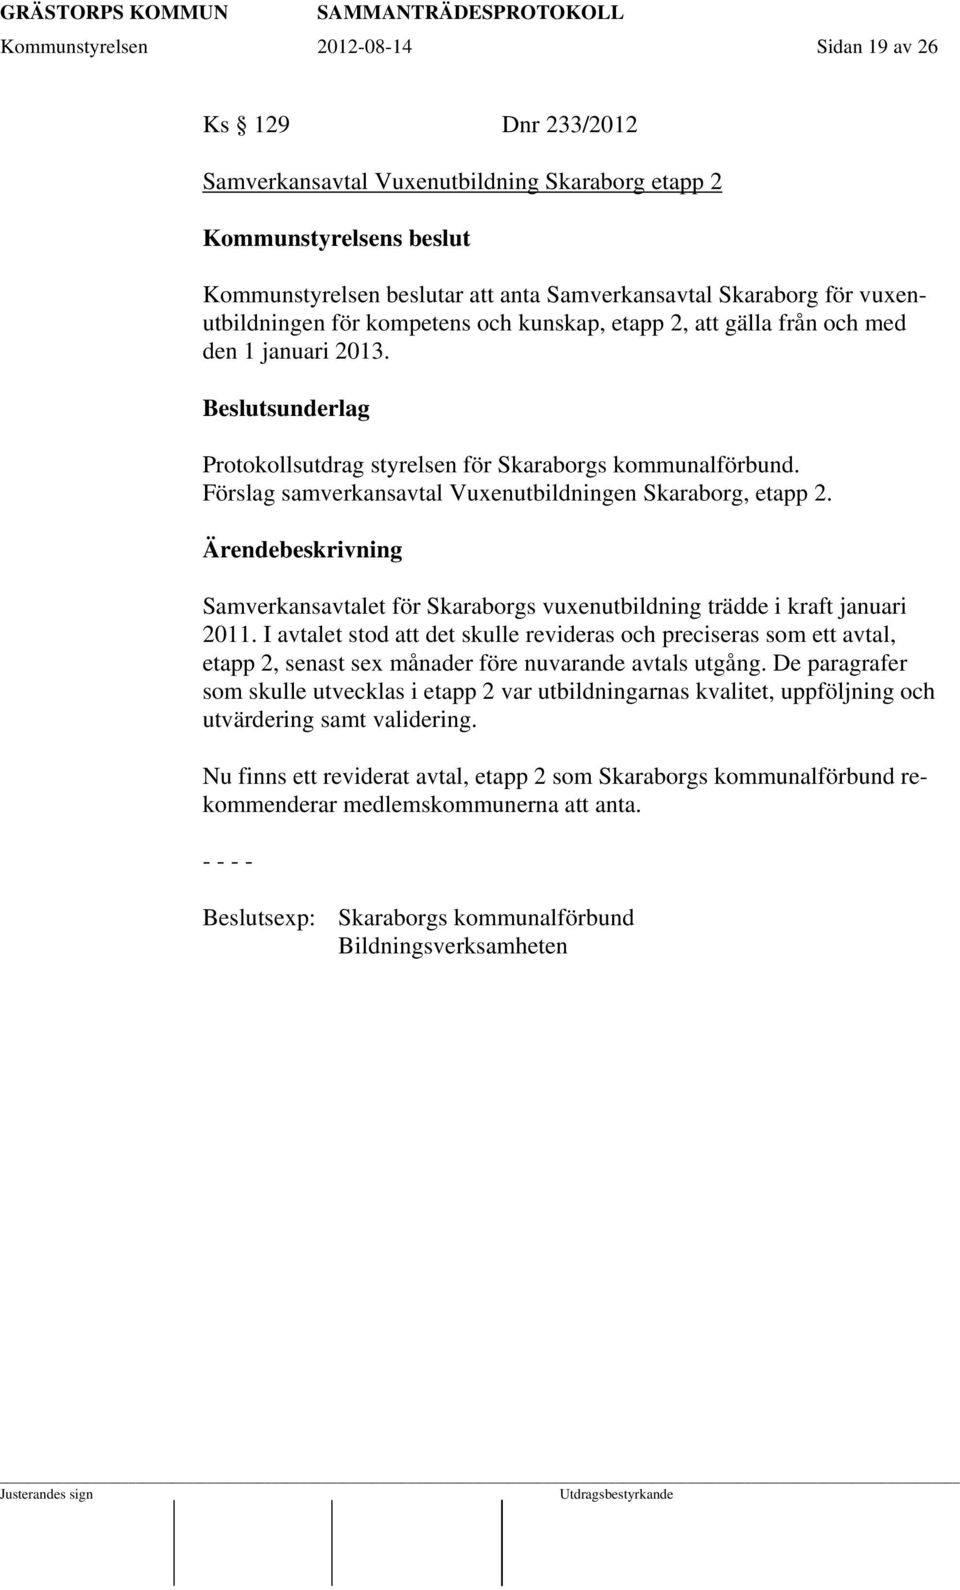 Förslag samverkansavtal Vuxenutbildningen Skaraborg, etapp 2. Samverkansavtalet för Skaraborgs vuxenutbildning trädde i kraft januari 2011.